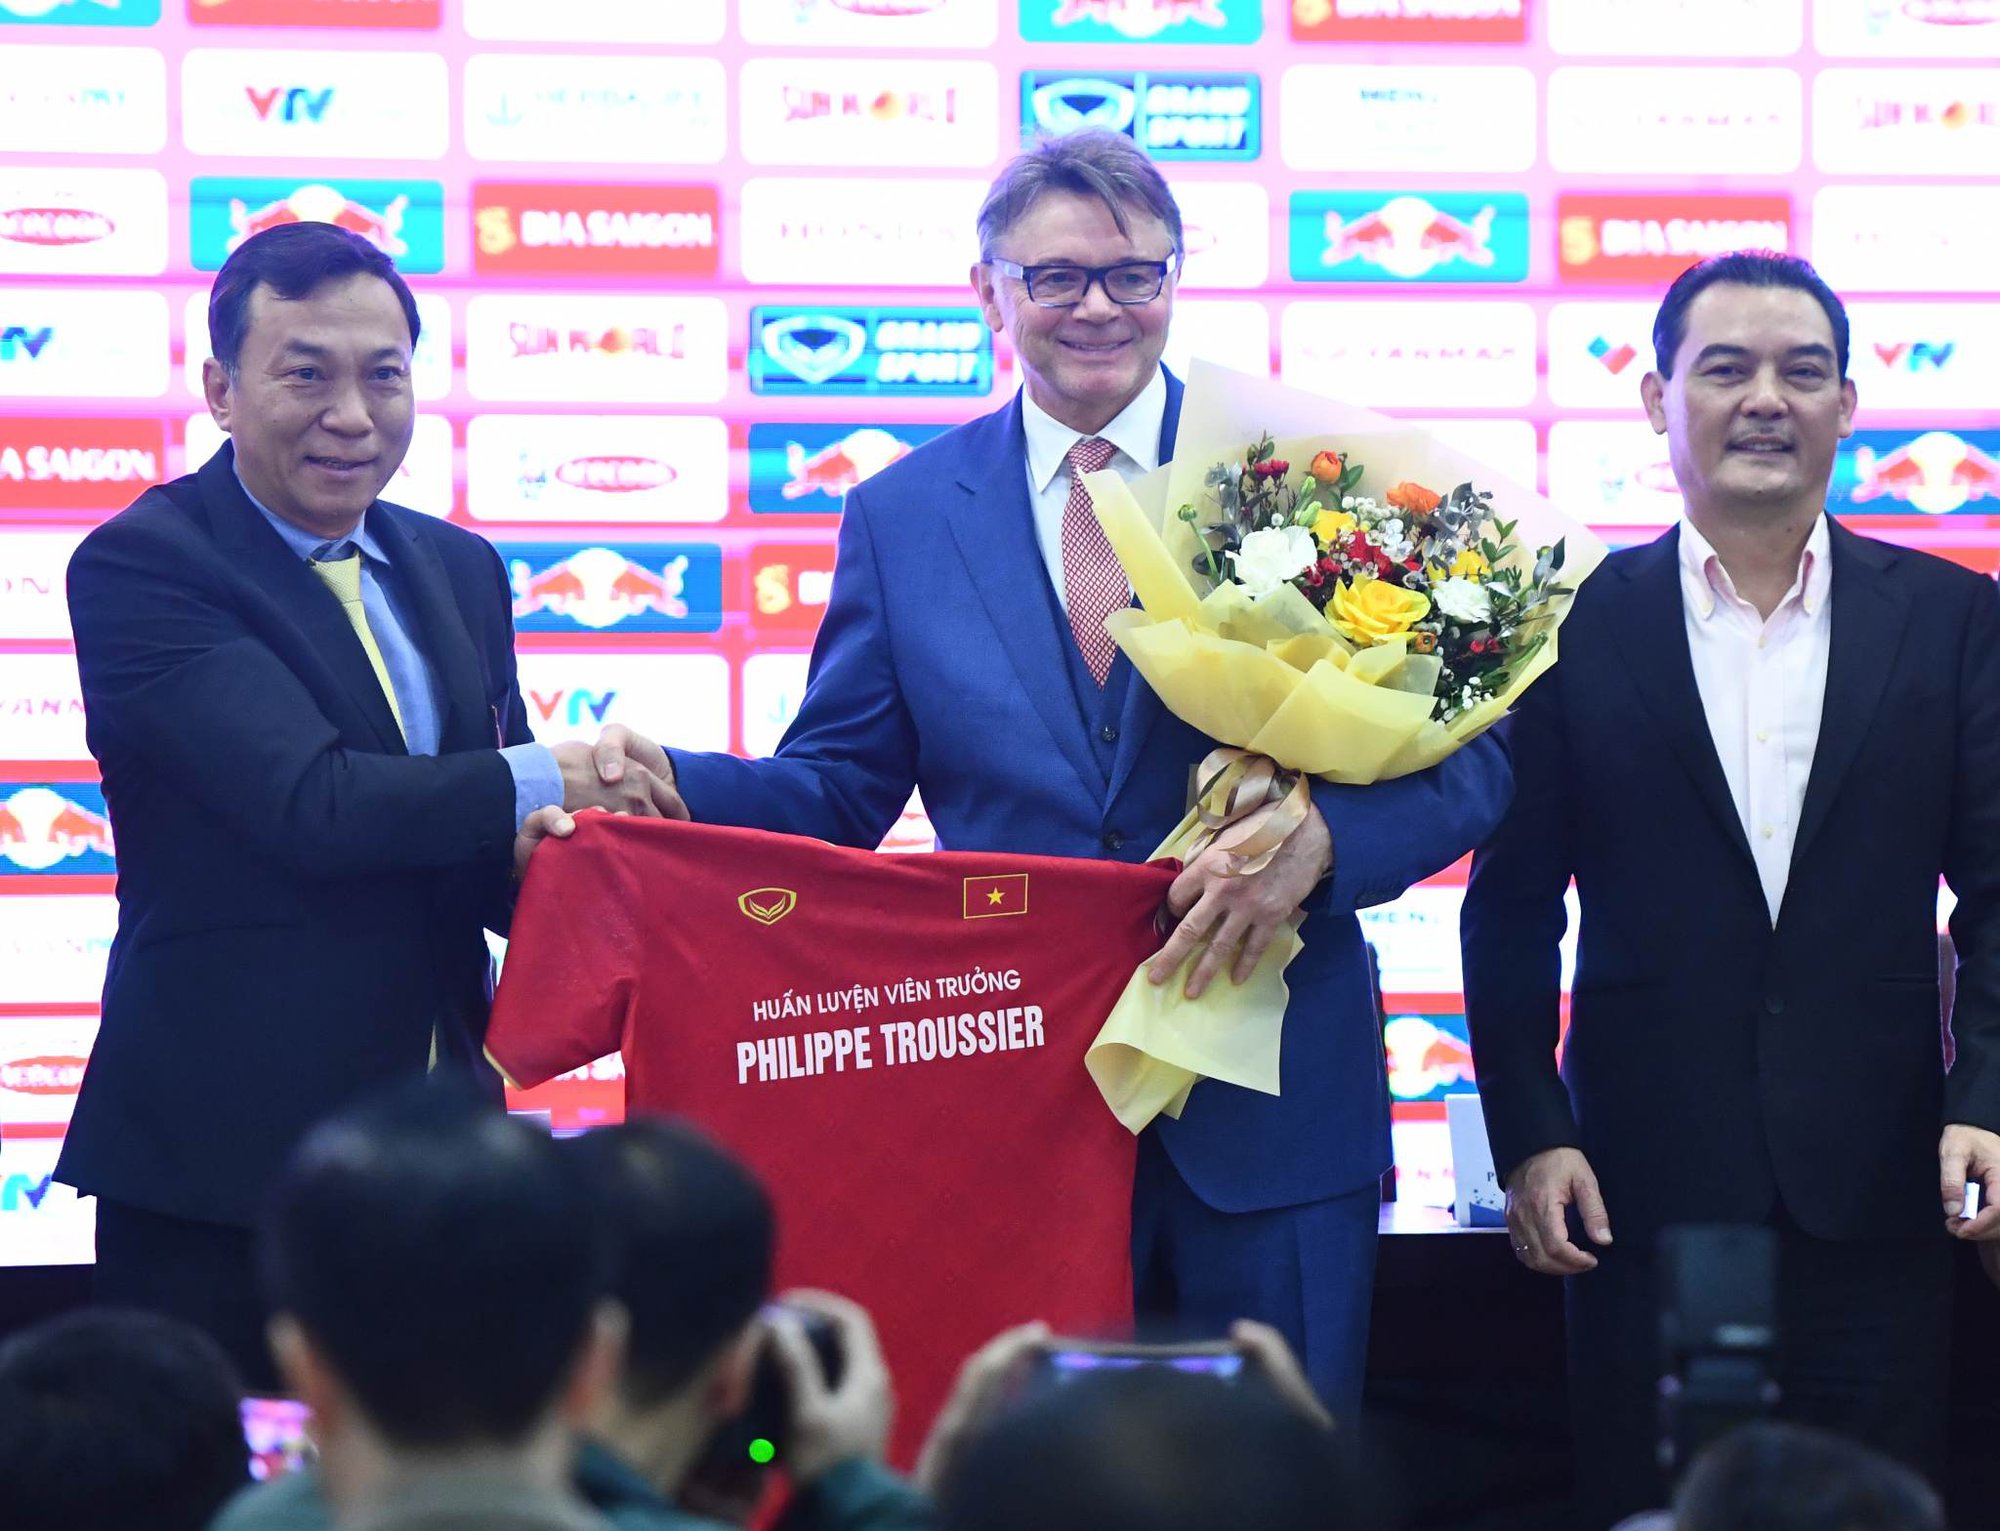 HLV Philippe Troussier hướng tới dự World Cup cùng ĐT Việt Nam - Ảnh 1.